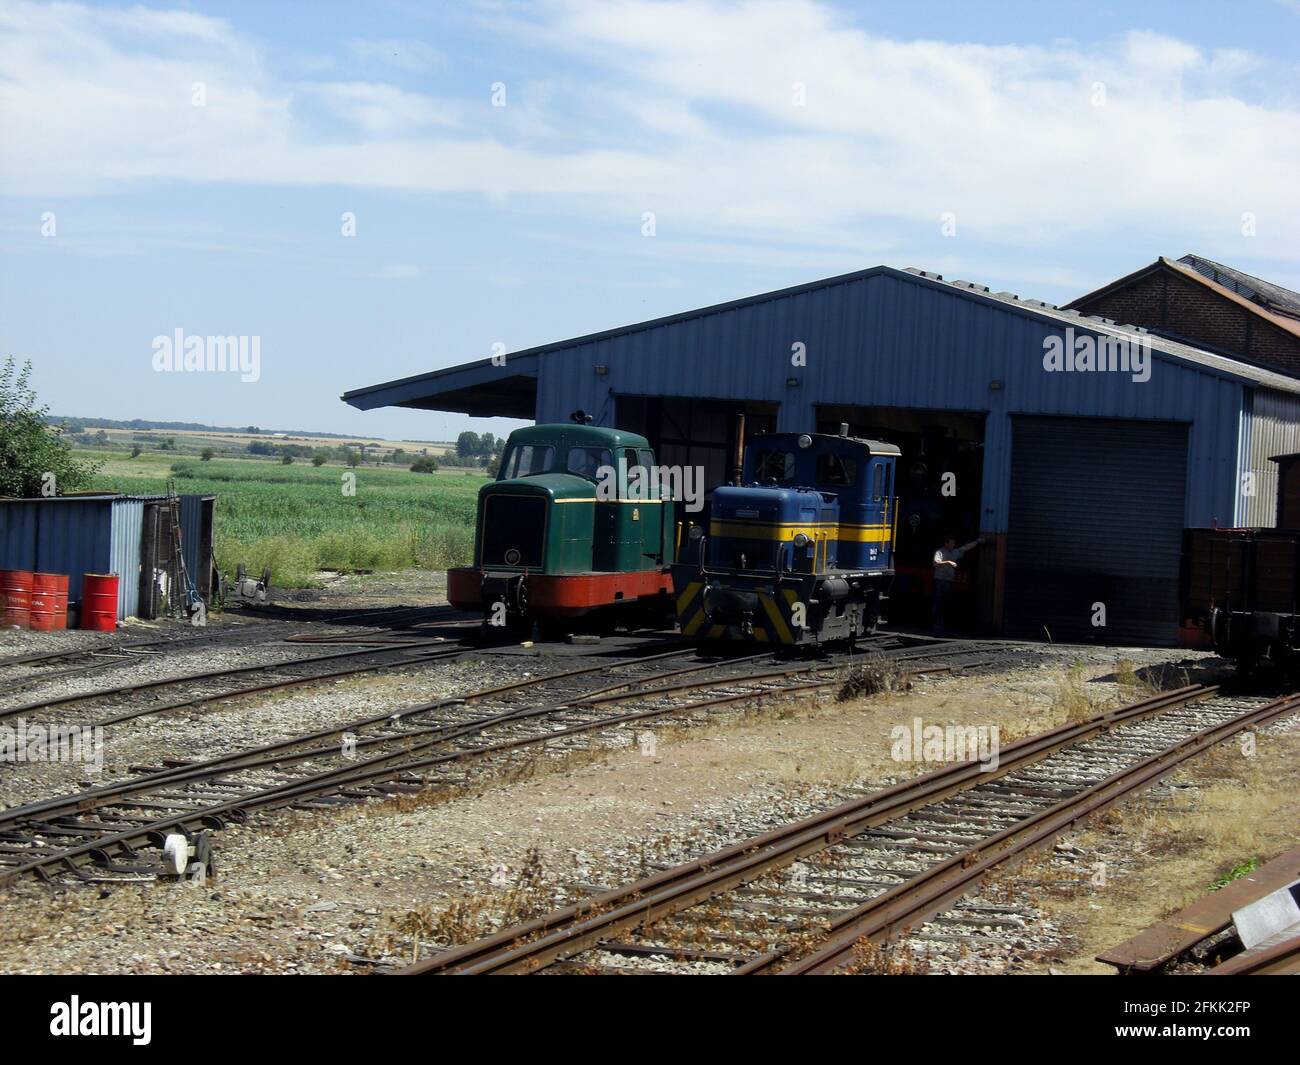 Le petit train à vapeur de la Baie de Somme Foto Stock